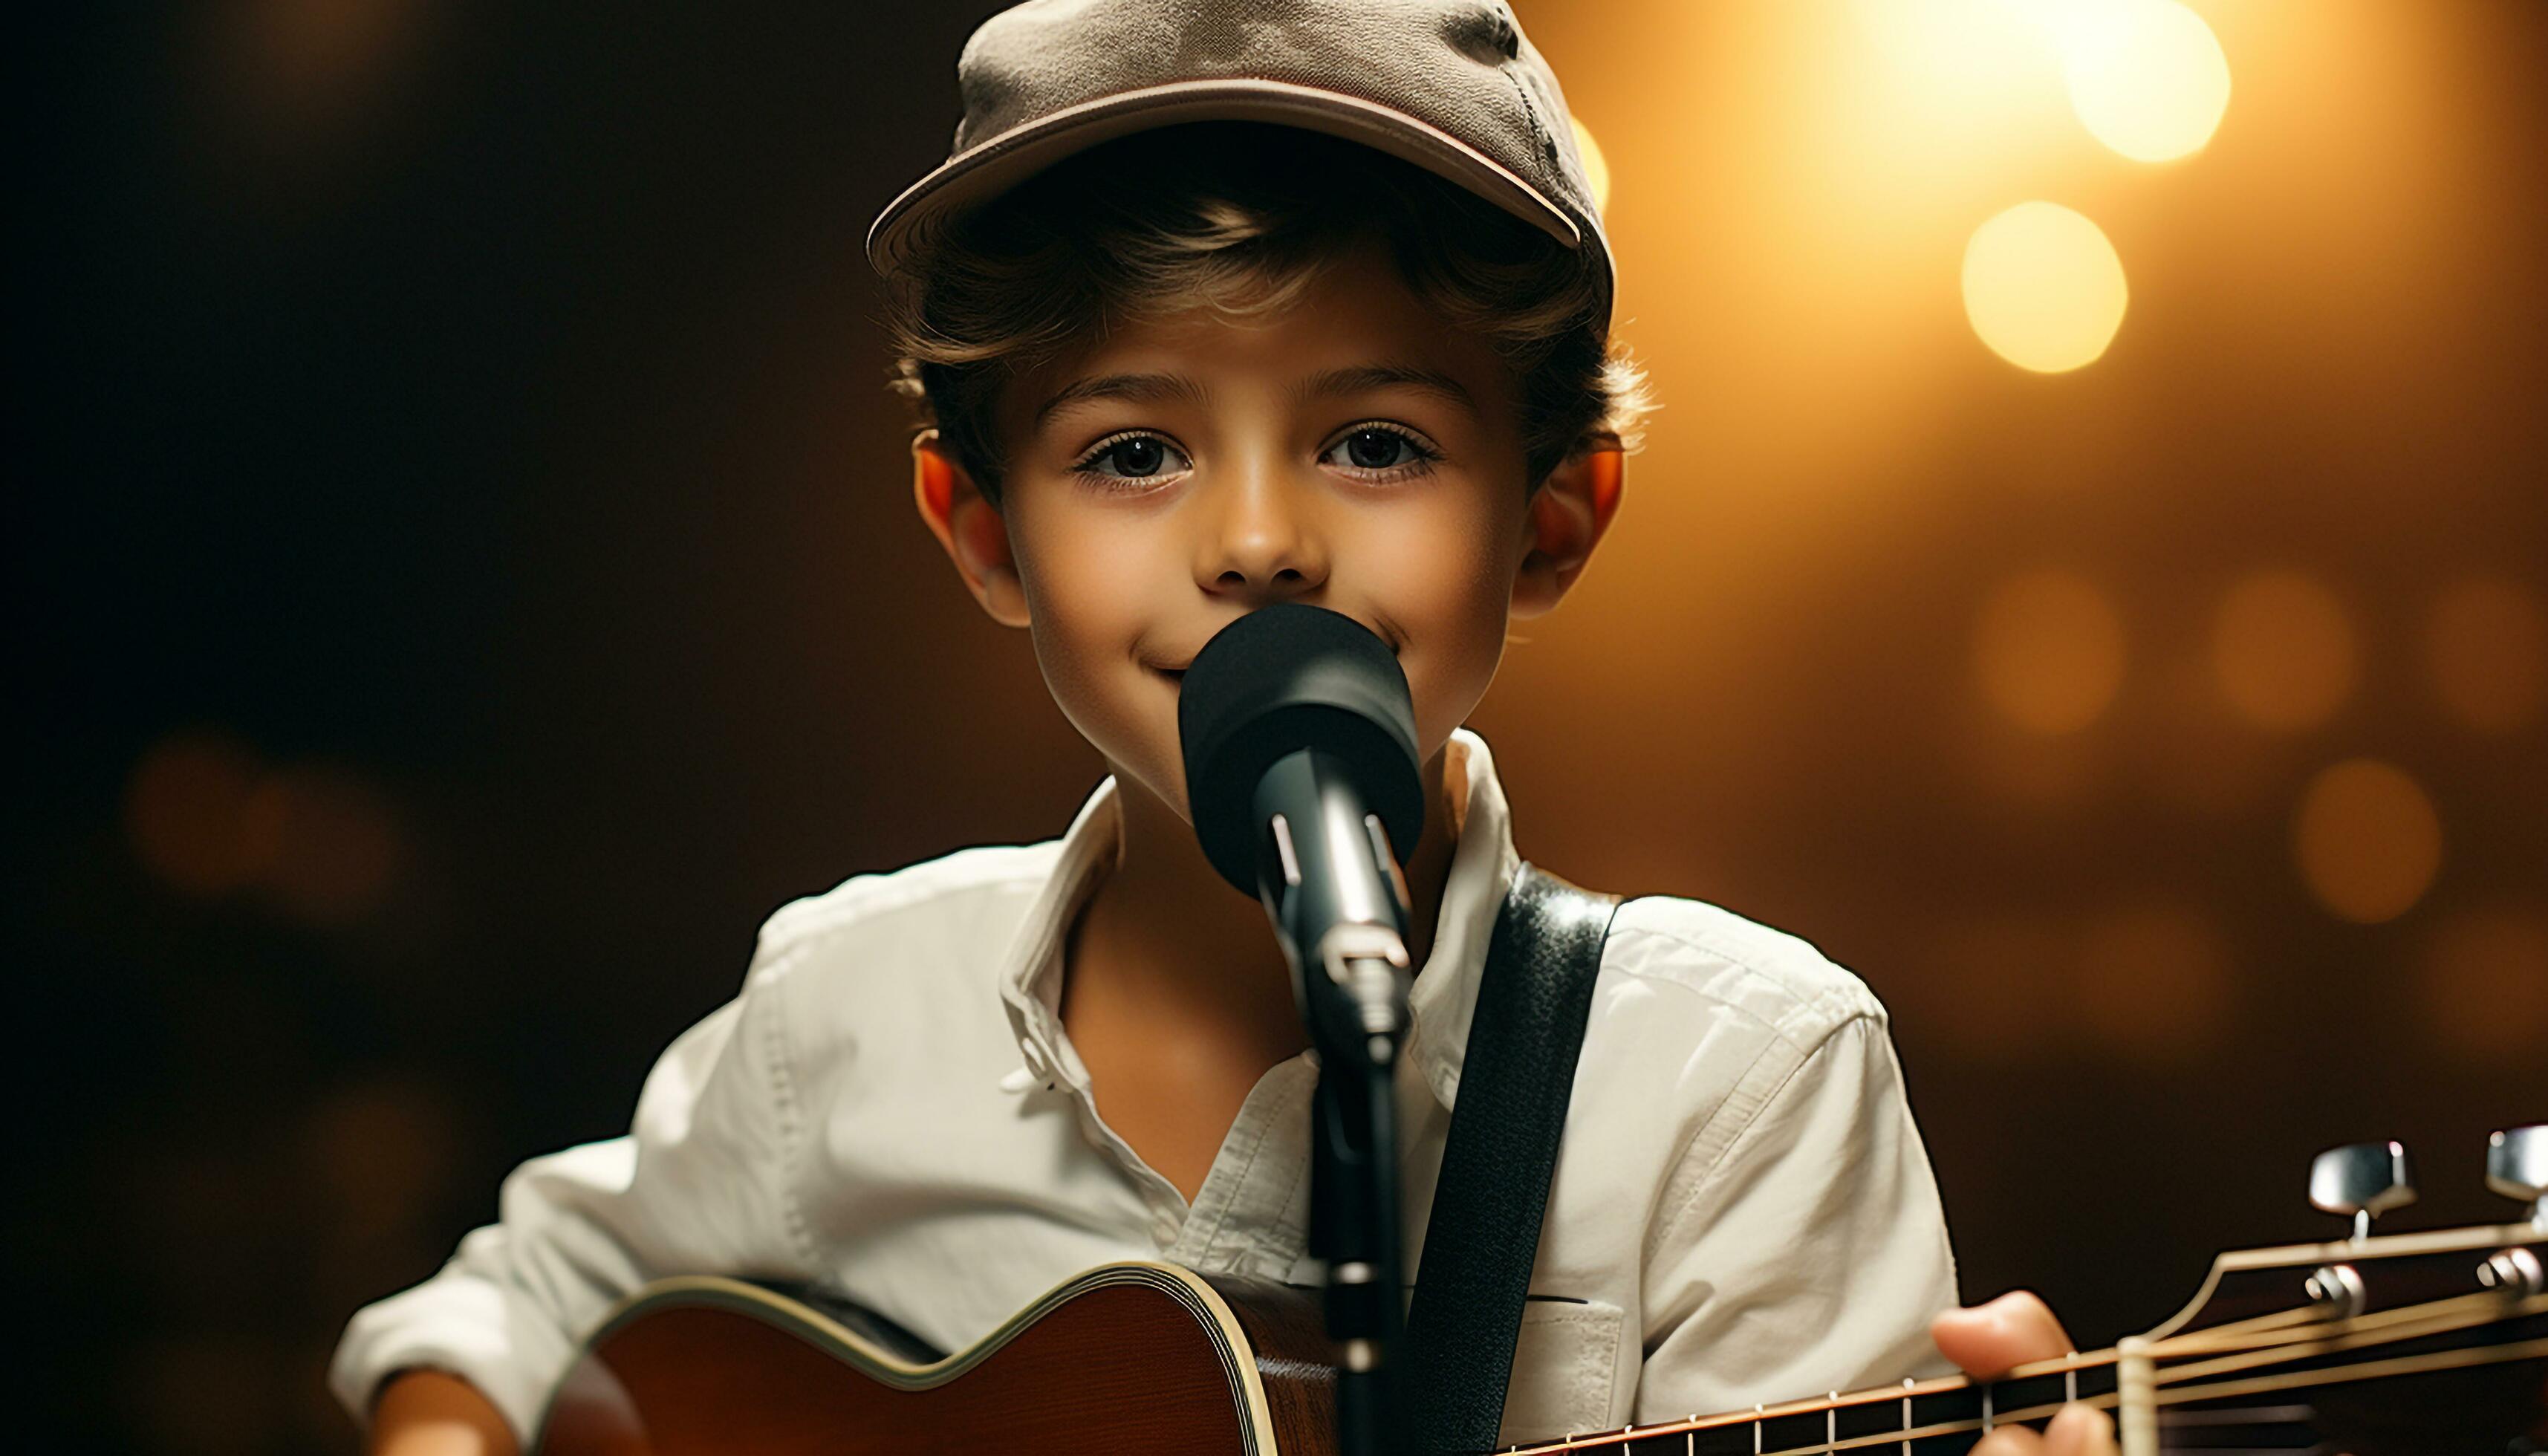 cute boy playing guitar